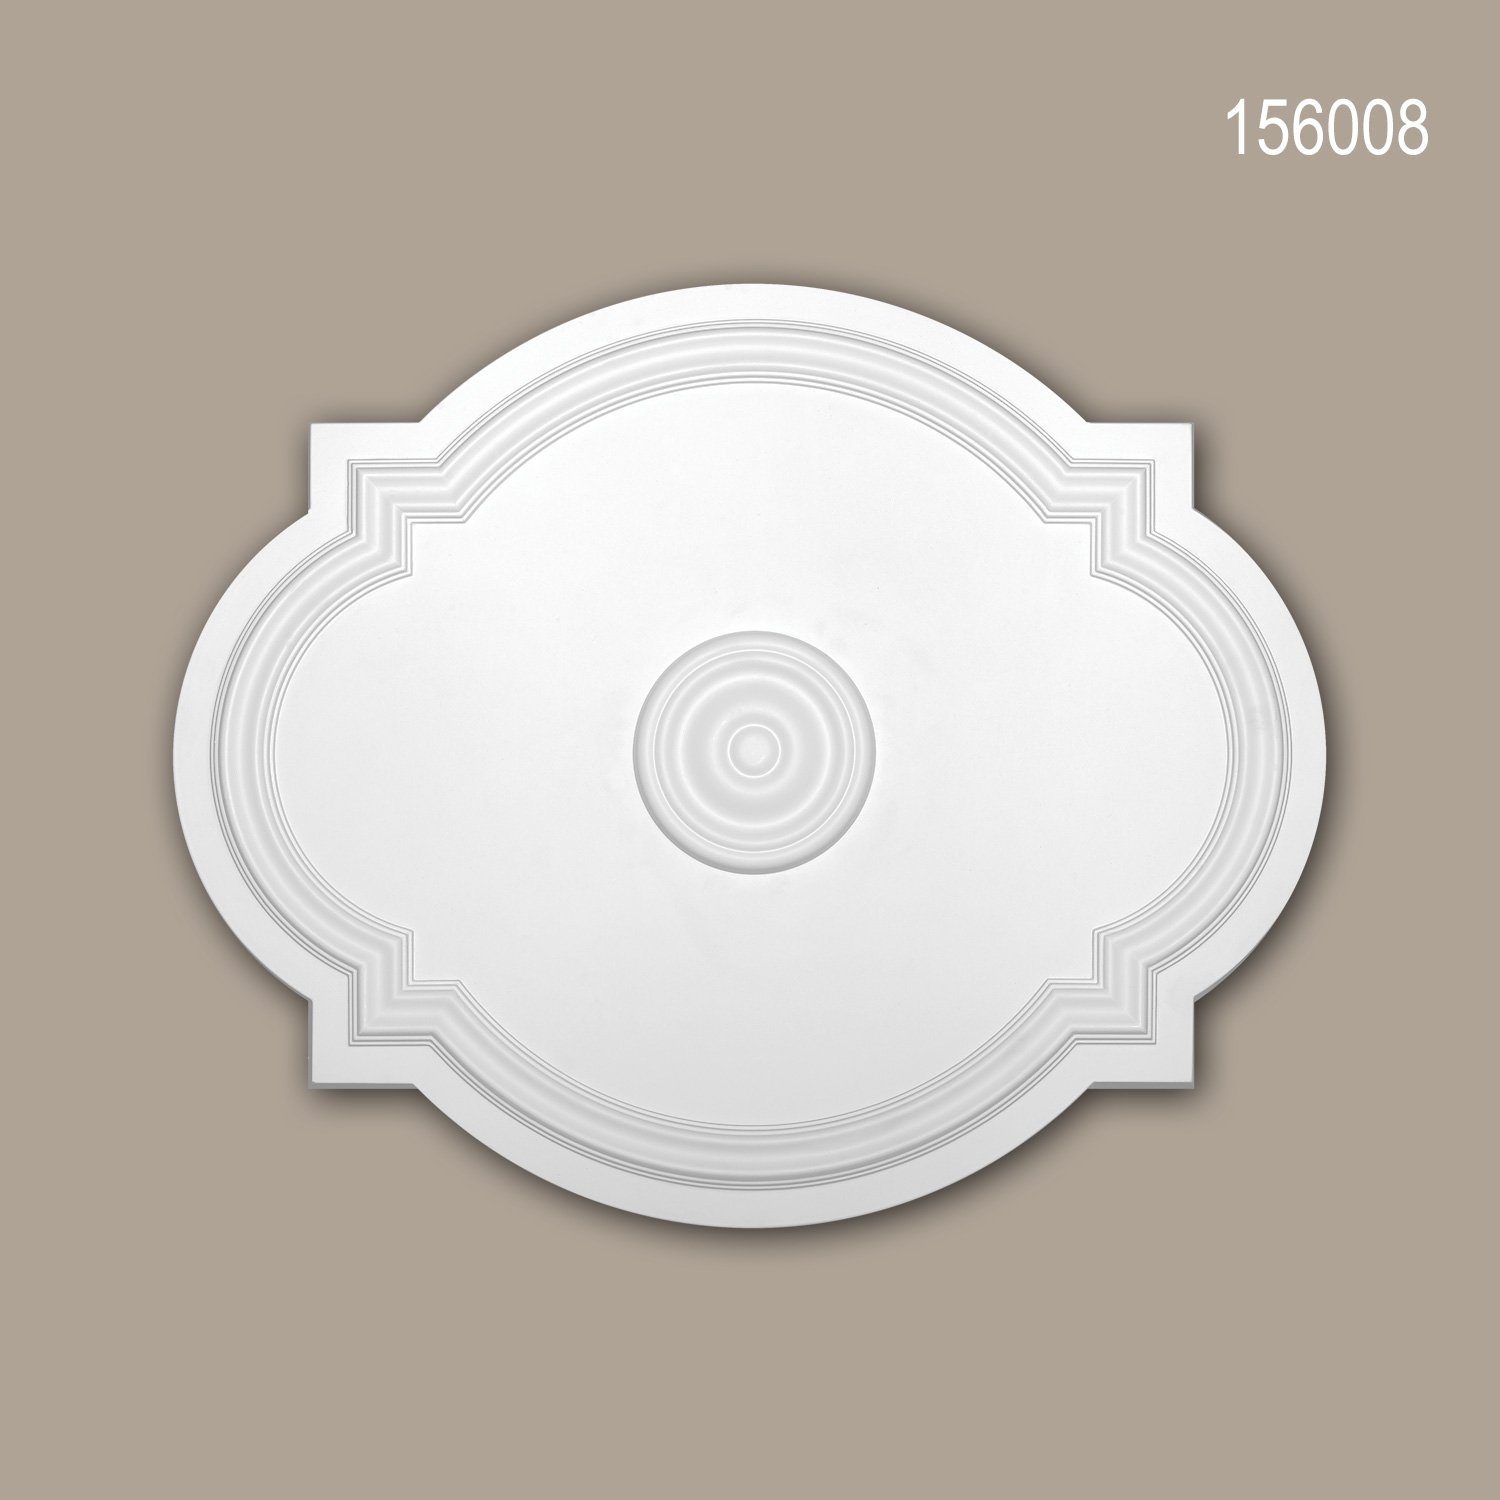 Profhome Decken-Rosette 156008 (Rosette, 1 St., Deckenrosette, Medallion, Stuckrosette, Deckenelement, Zierelement, 54 x 44 cm), weiß, vorgrundiert, Stil: Jugendstil